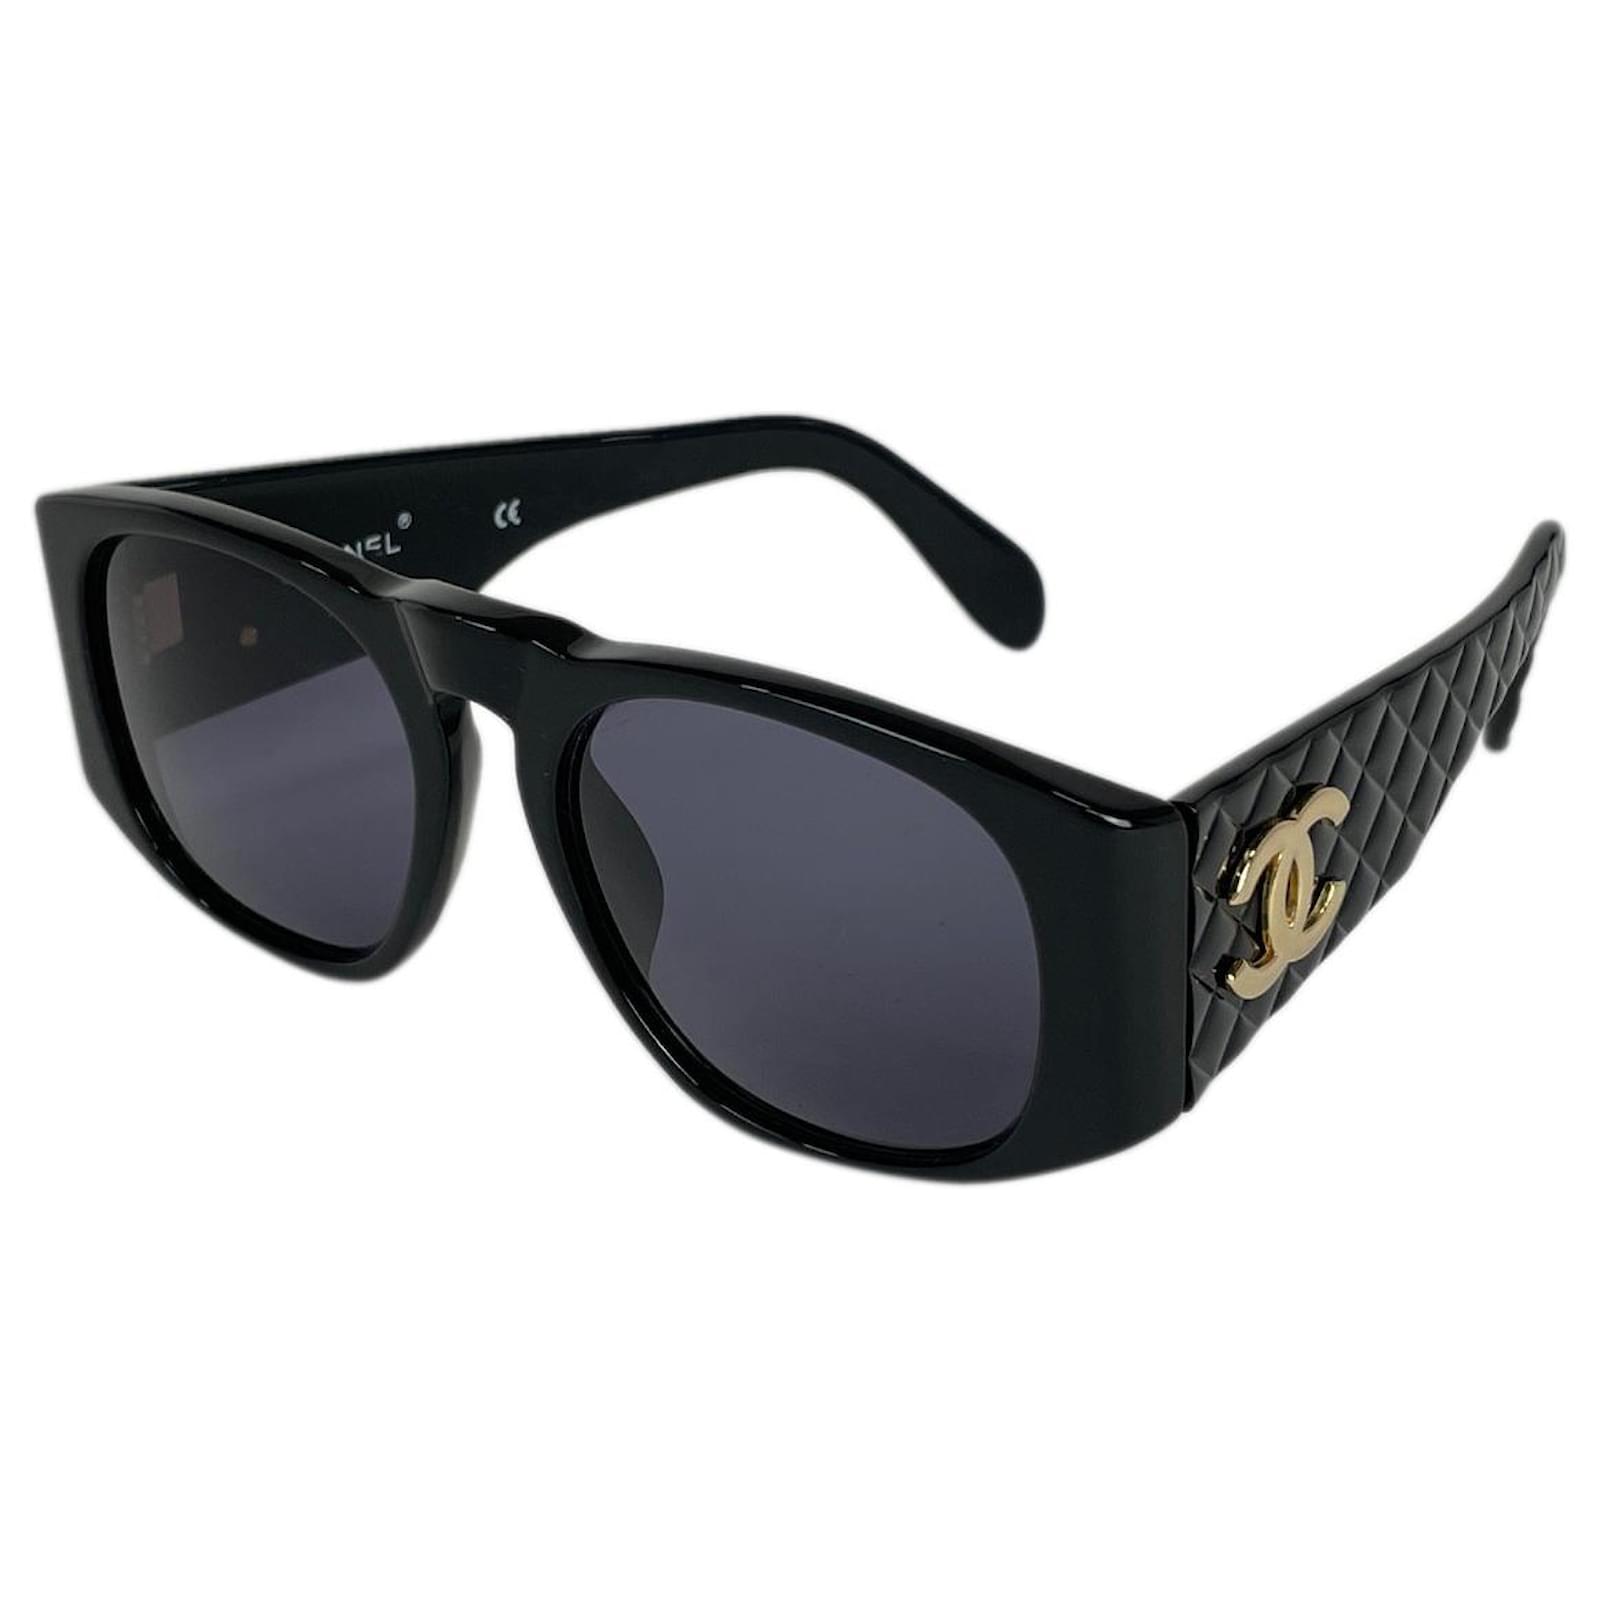 Sunglasses Chanel Black in Plastic - 33181440